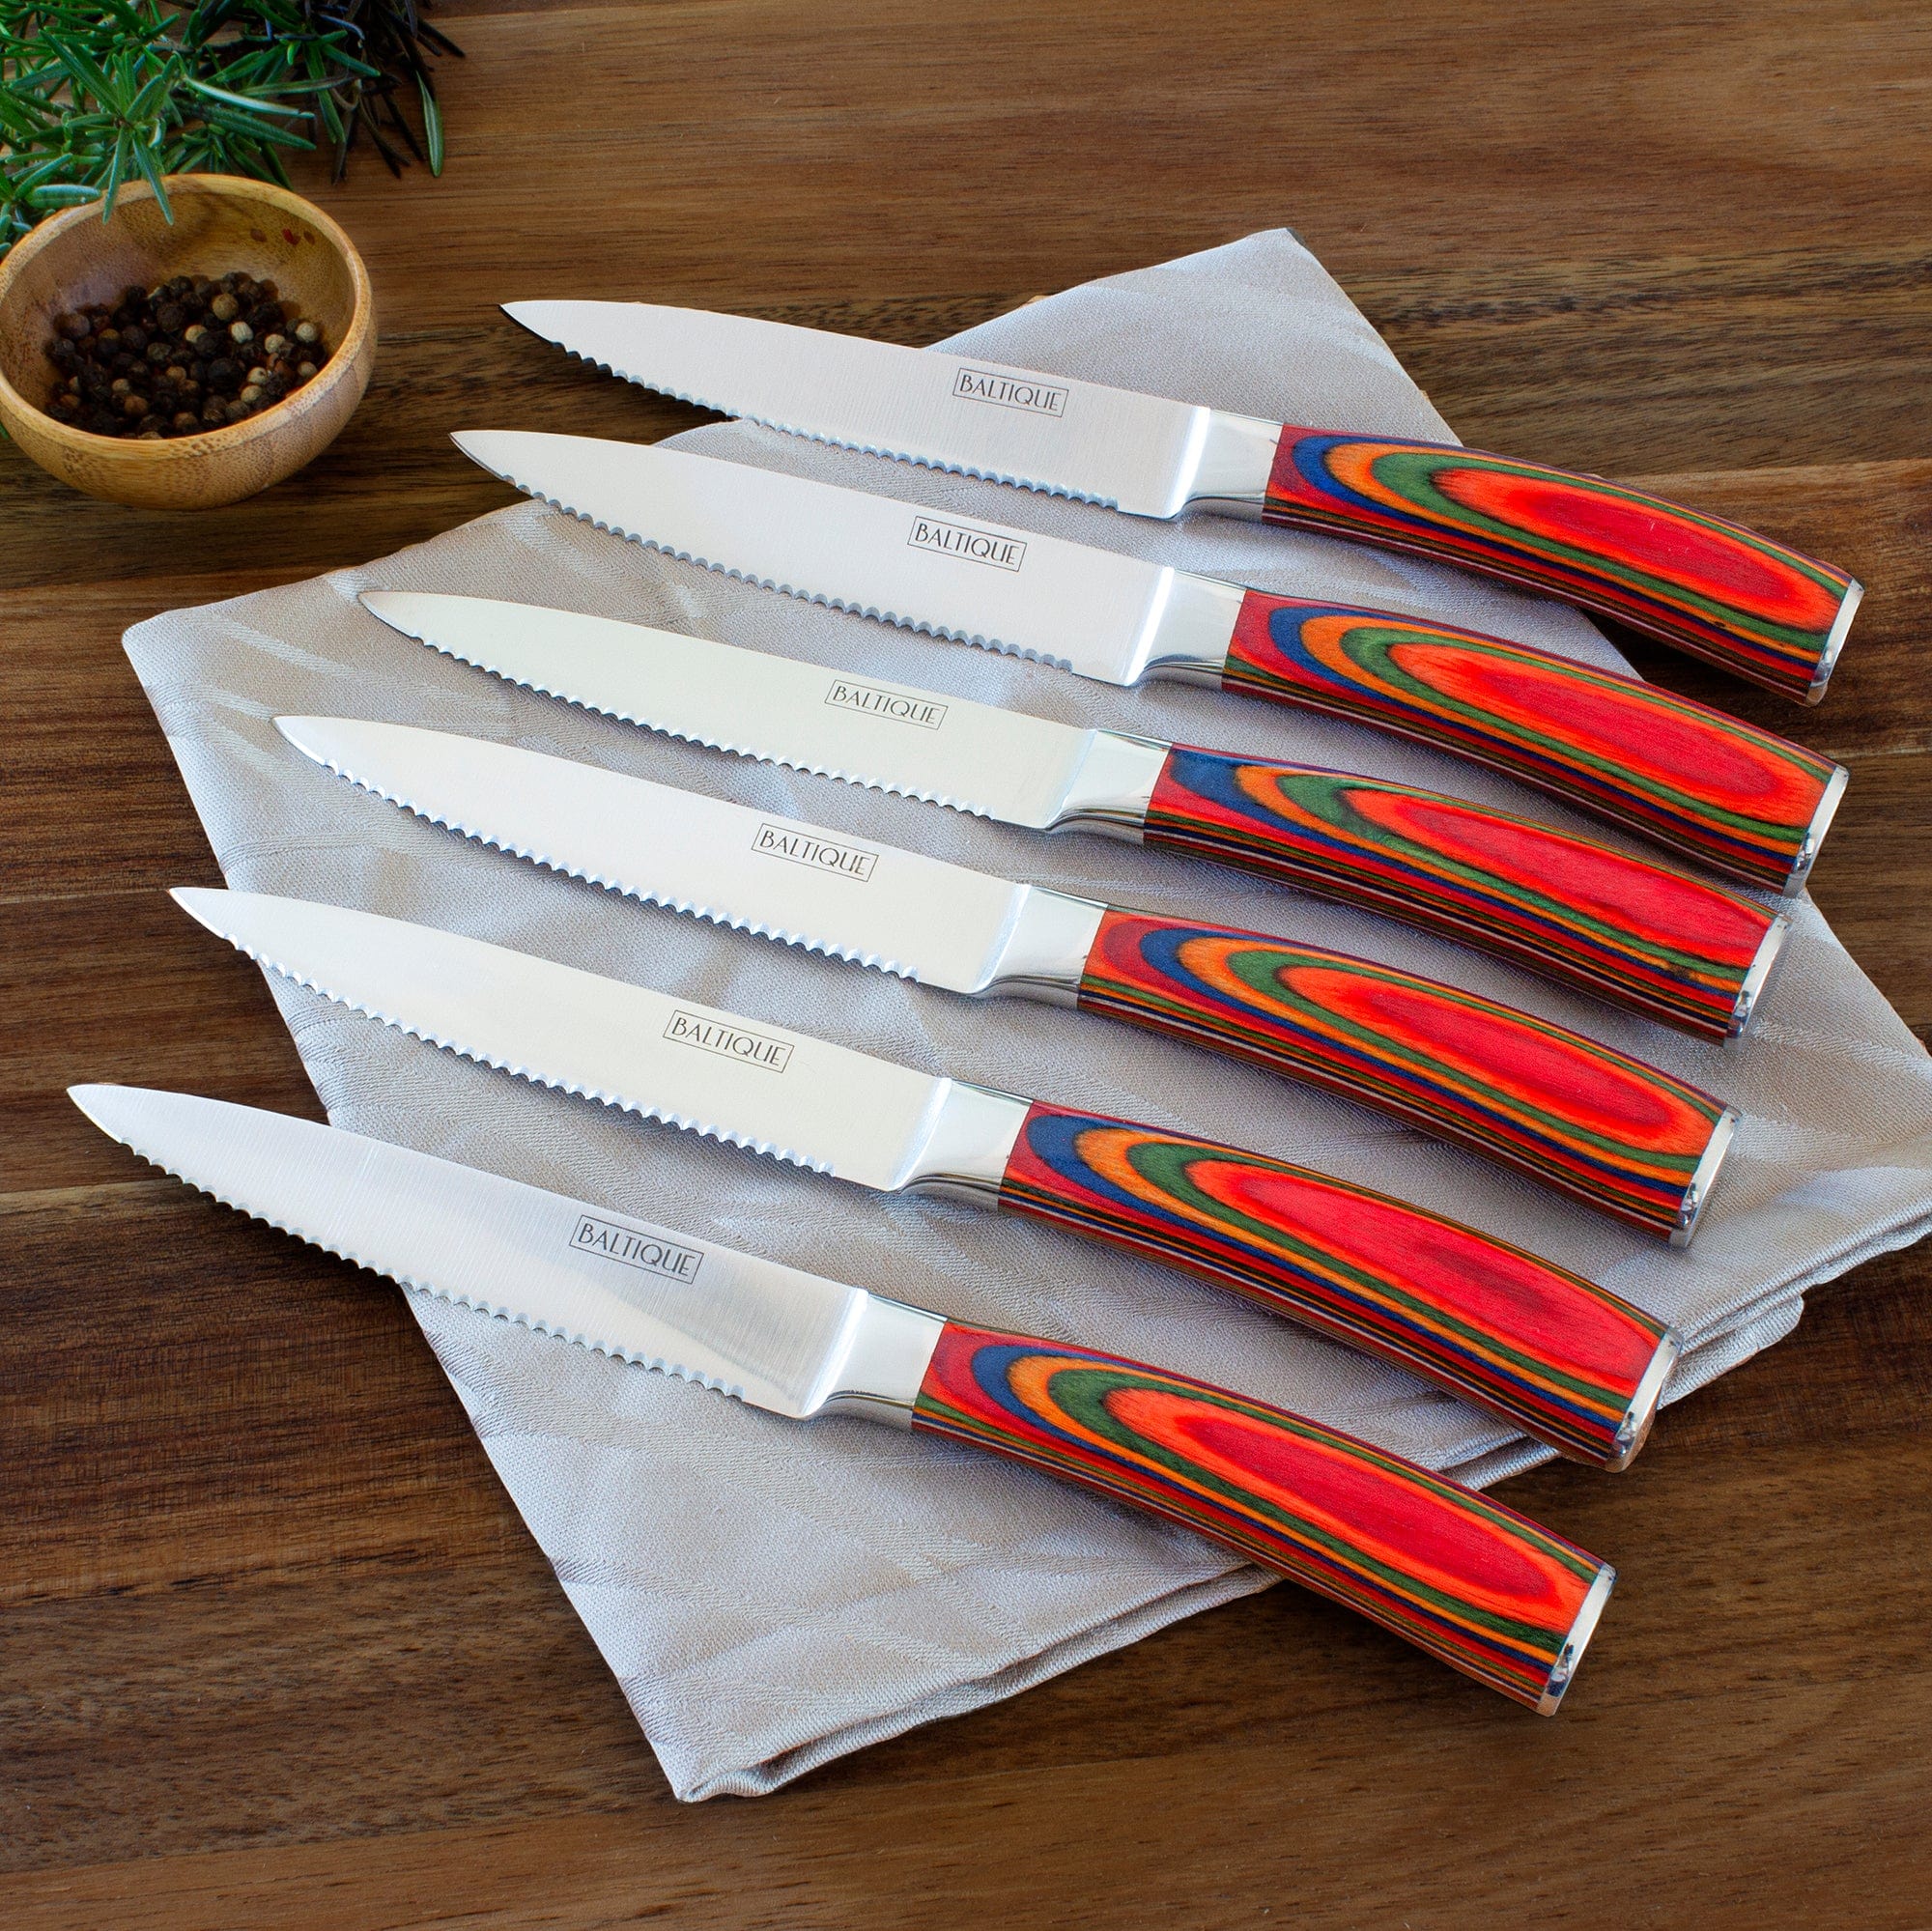 Set of 6 Mid Century Modern Steak Knives Atomic Starburst Design Knife Set  1960s Danish Modern Knives 